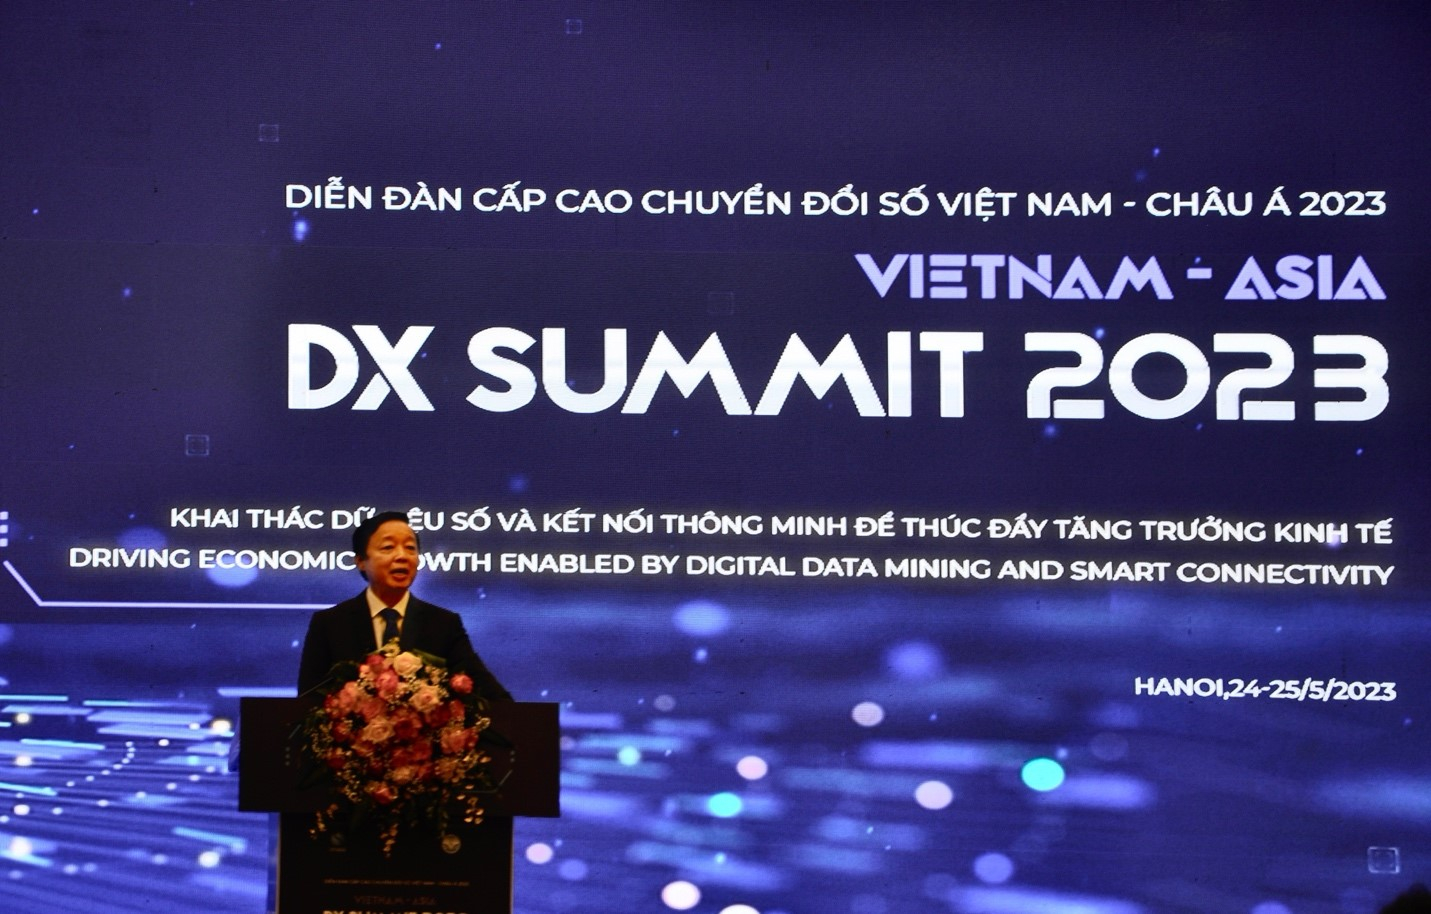 Tại sự kiện, ông Nguyễn Văn Khoa - Chủ tịch VINASA, Tổng Giám đốc Tập đoàn FPT đánh giá: “Chuyển đổi số tại Việt Nam đang bước vào giai đoạn tạo ra những kết quả thực, những giá trị thiết thực cho nền kinh tế - xã hội. Đây là lúc cơ sở dữ liệu phát huy vai trò và sức mạnh”.